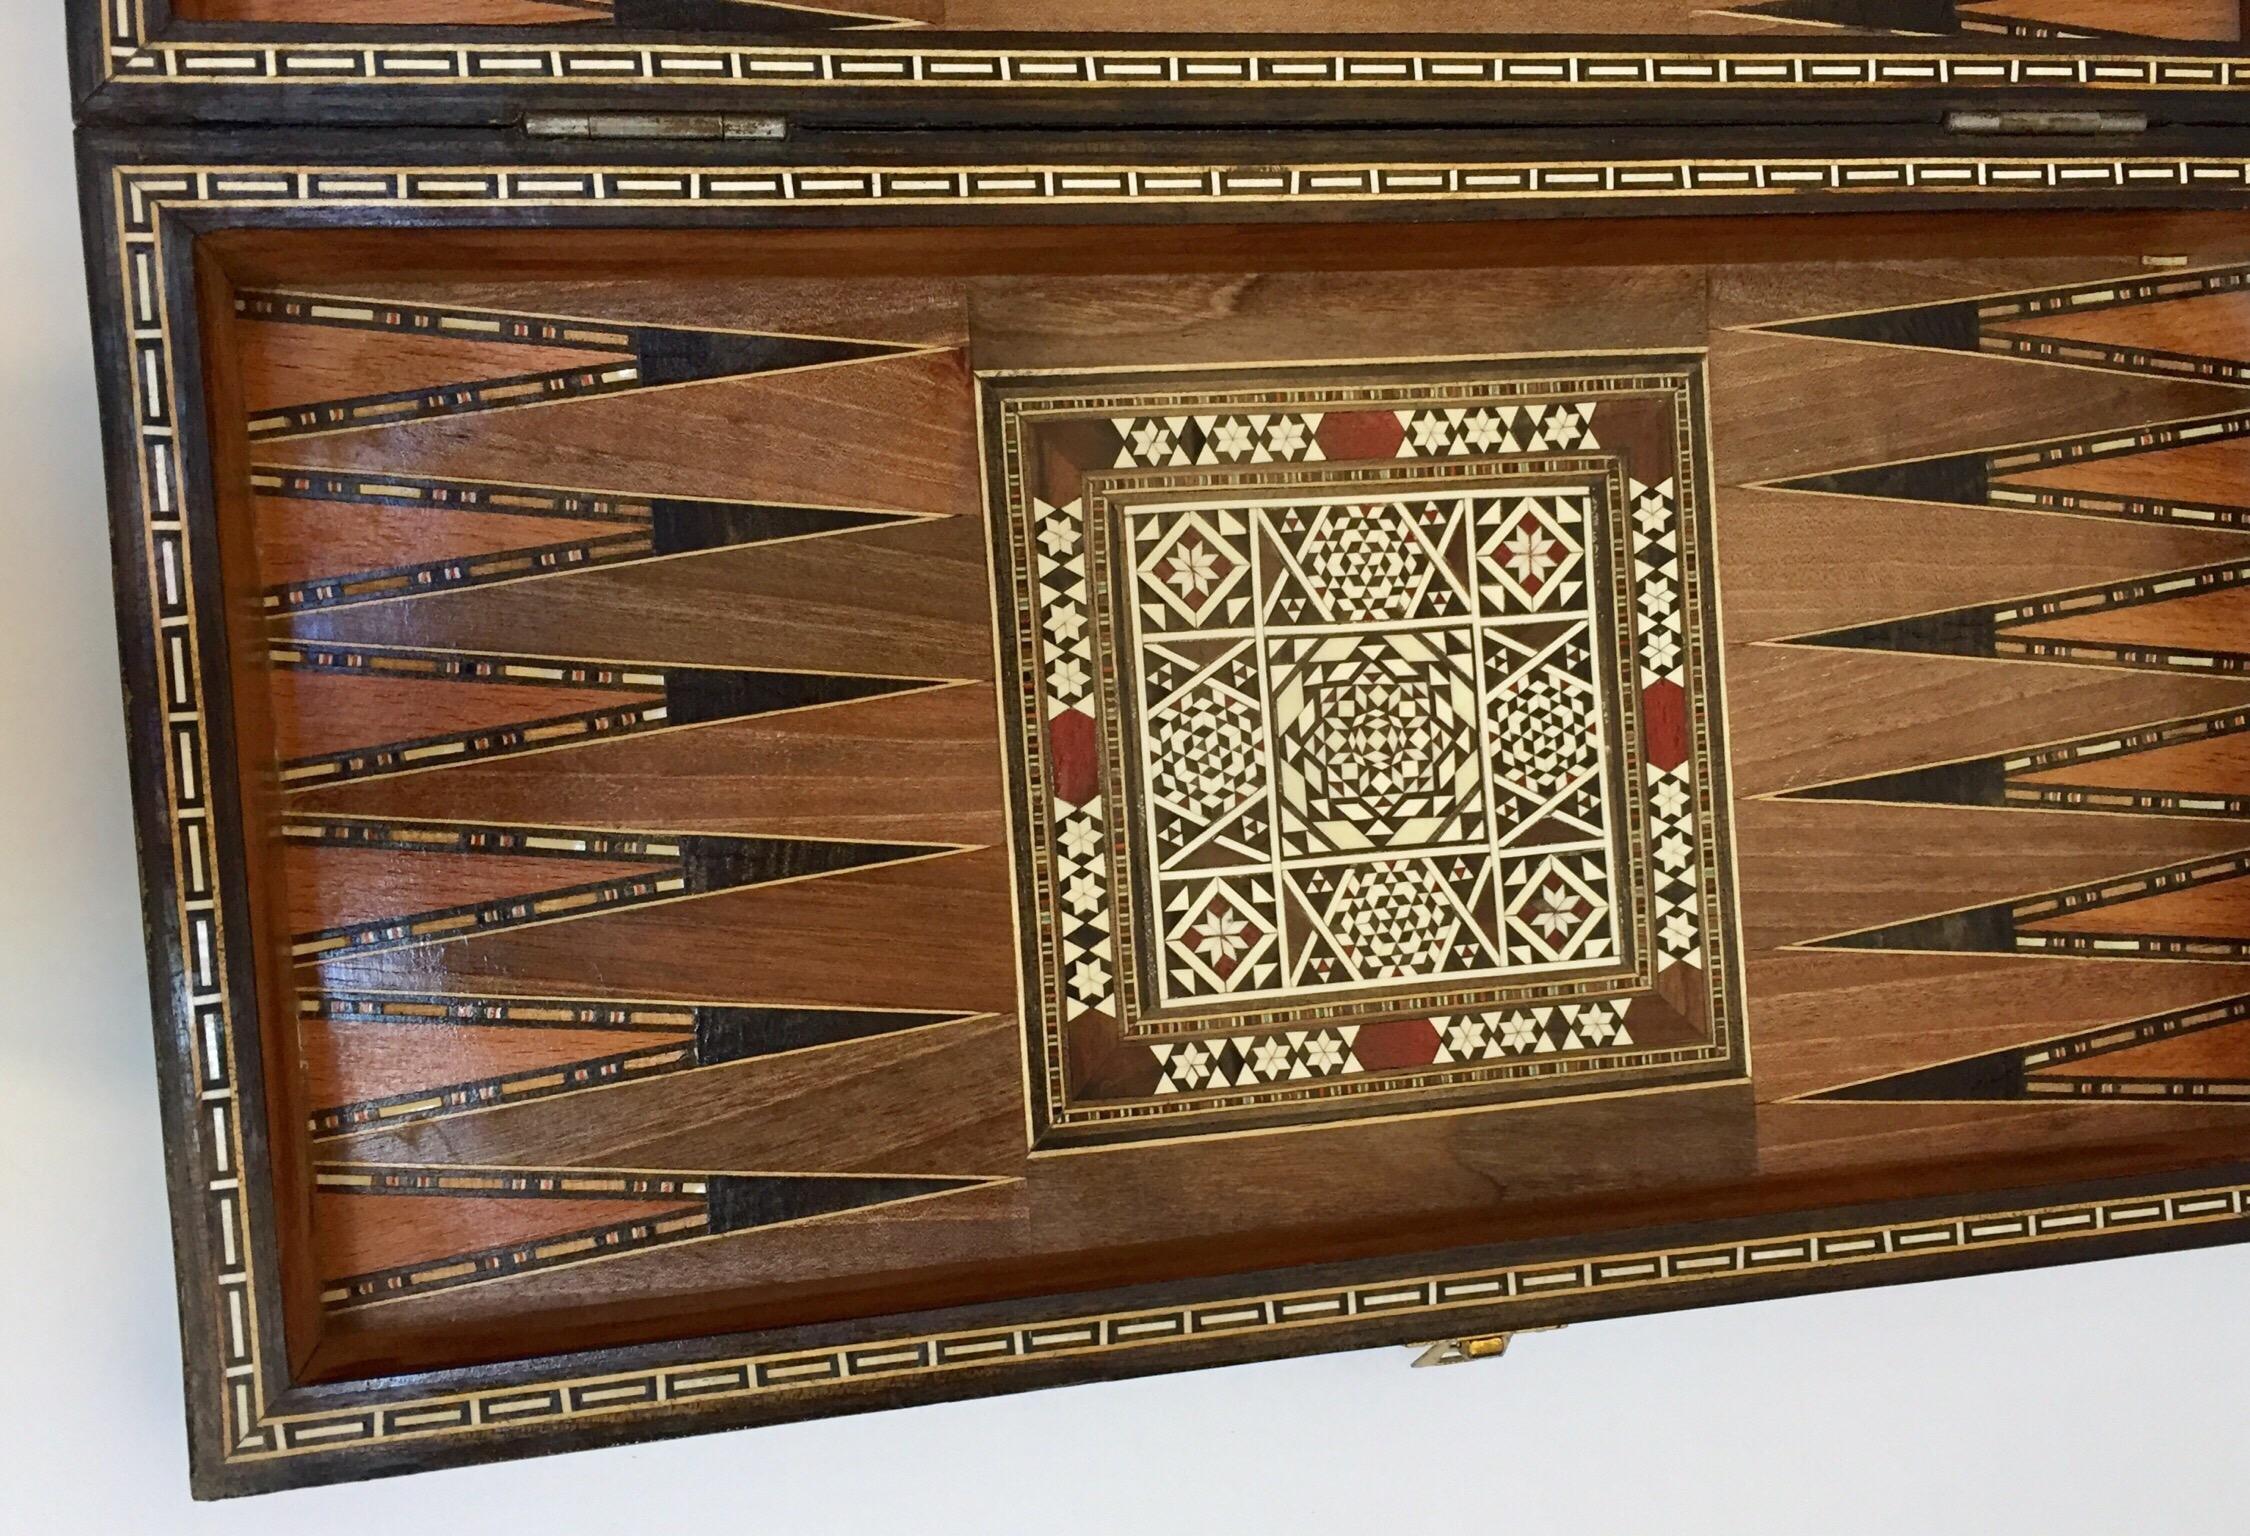 Vieux grand jeu complet de backgammon et d'echecs en mosaique incrustee syrienne 1